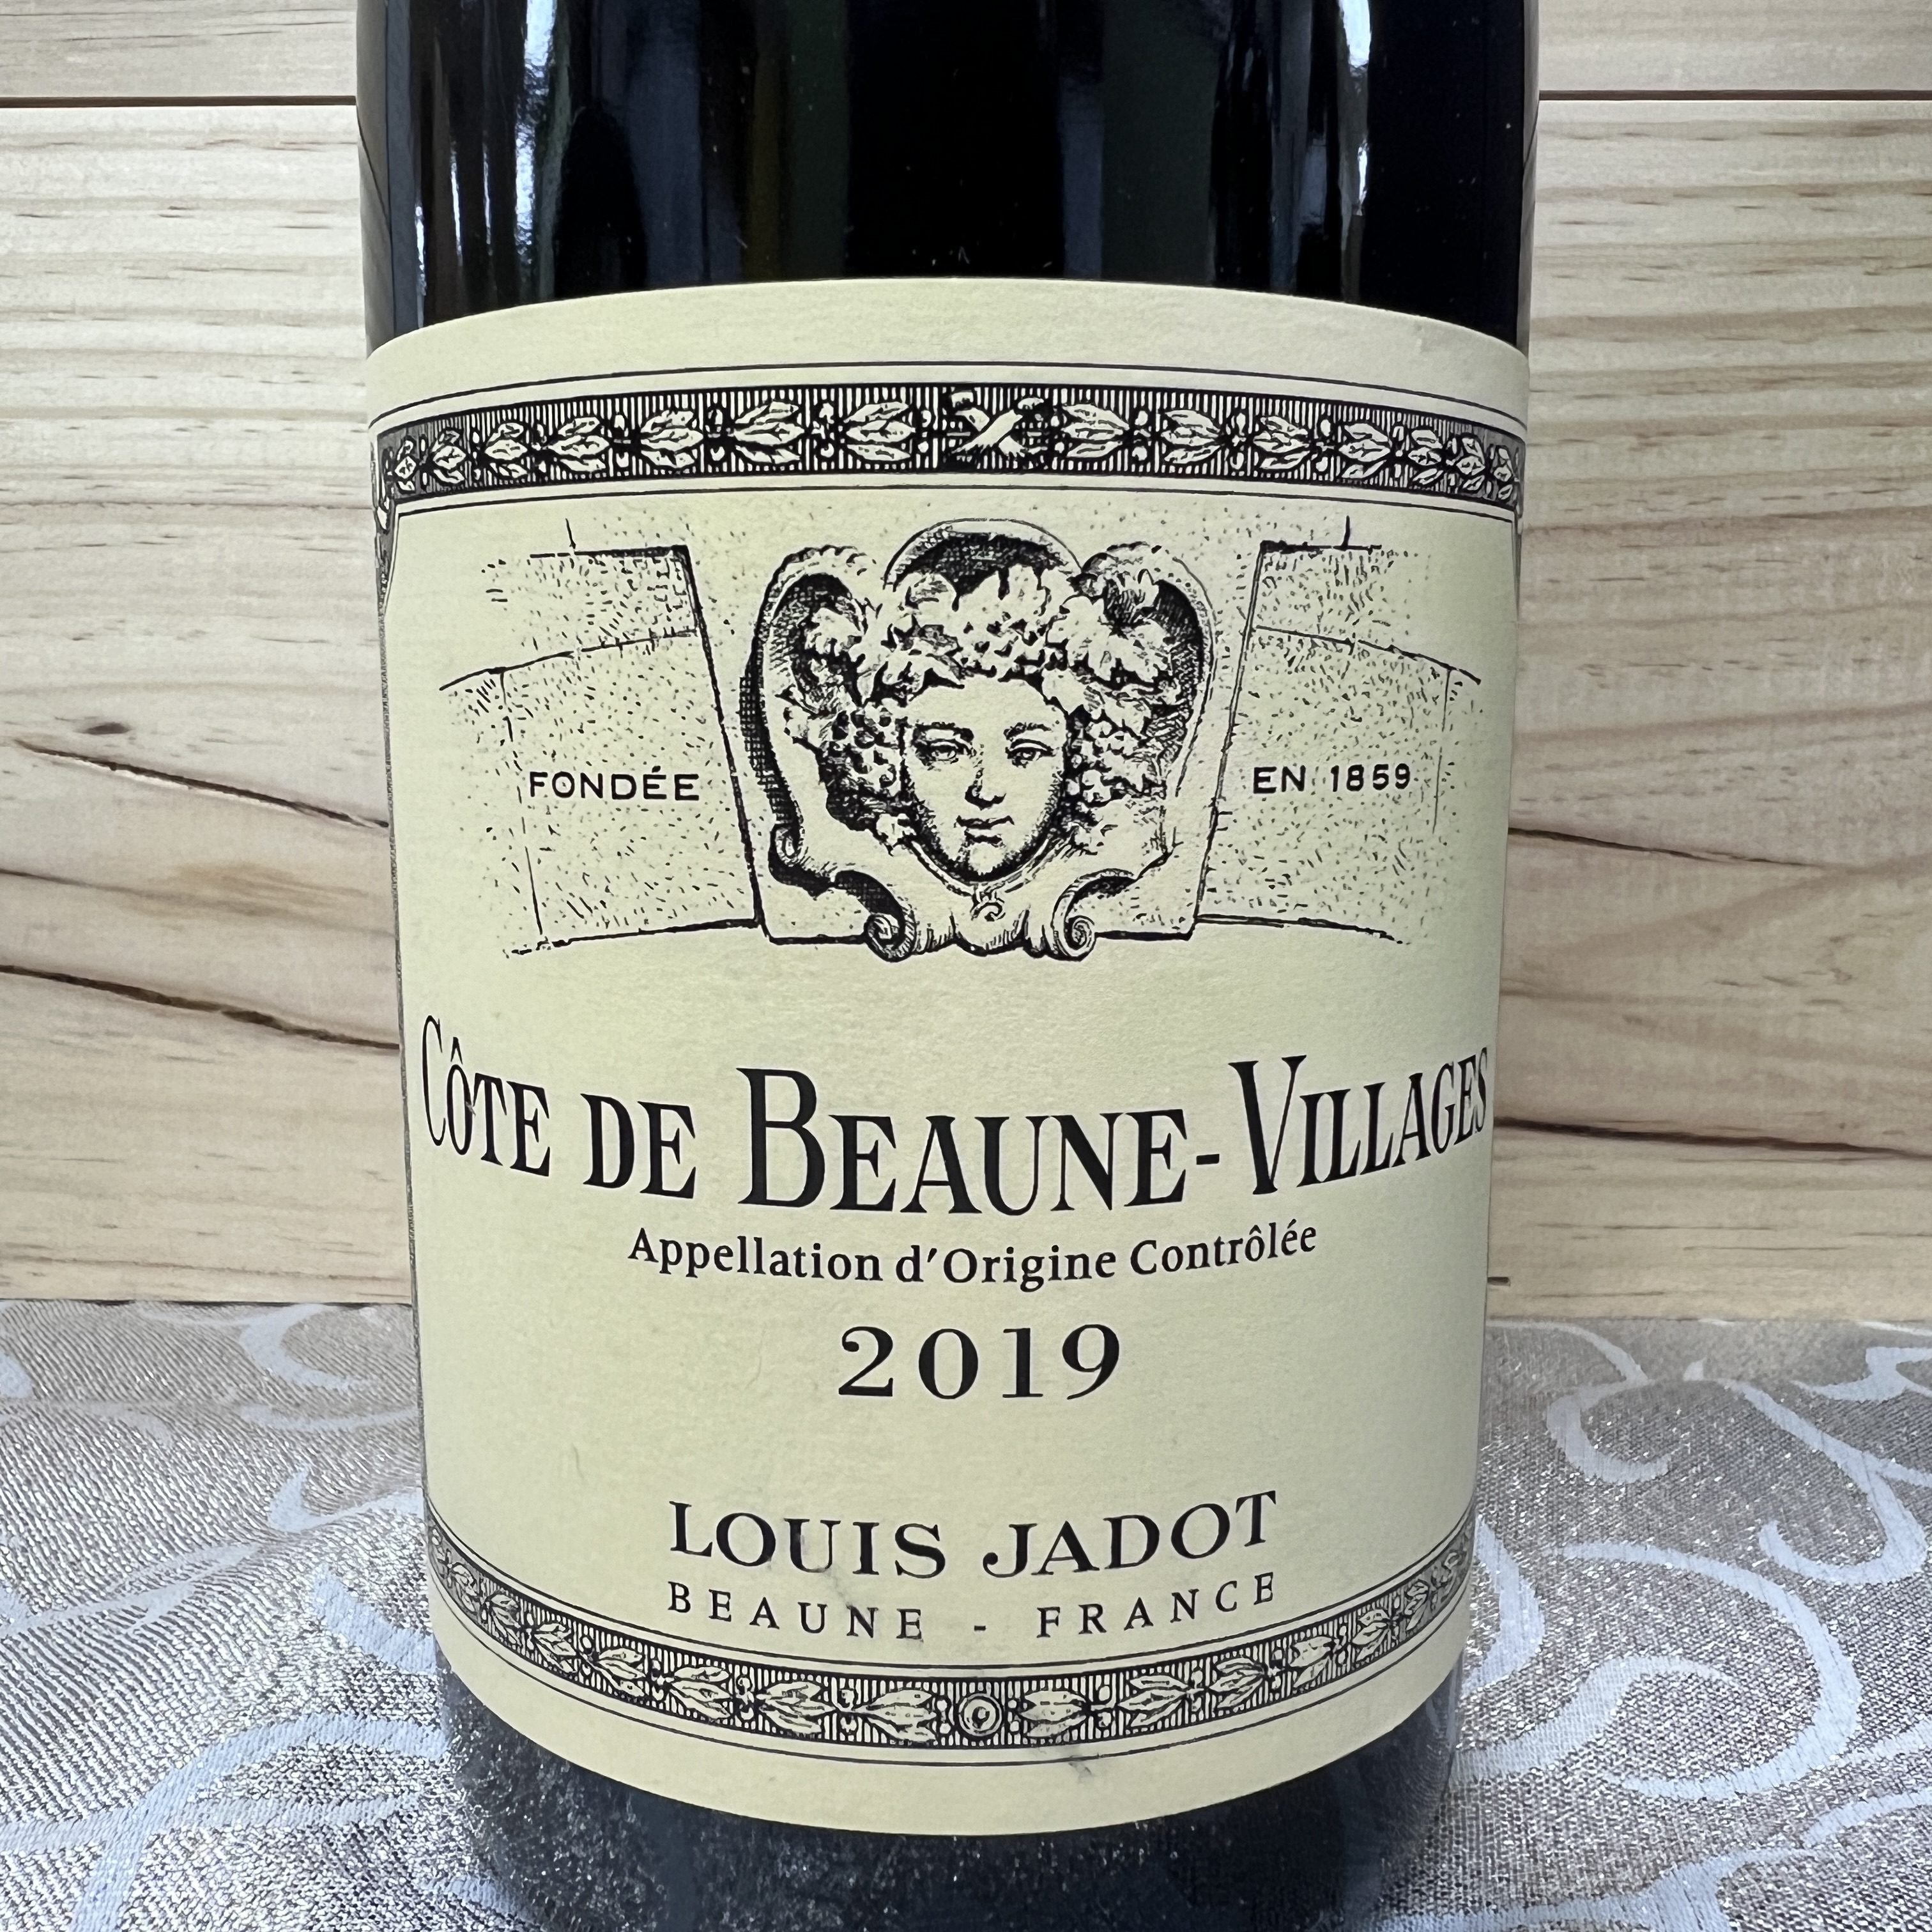 Louis Jadot Cote de Beaune Villages 2019